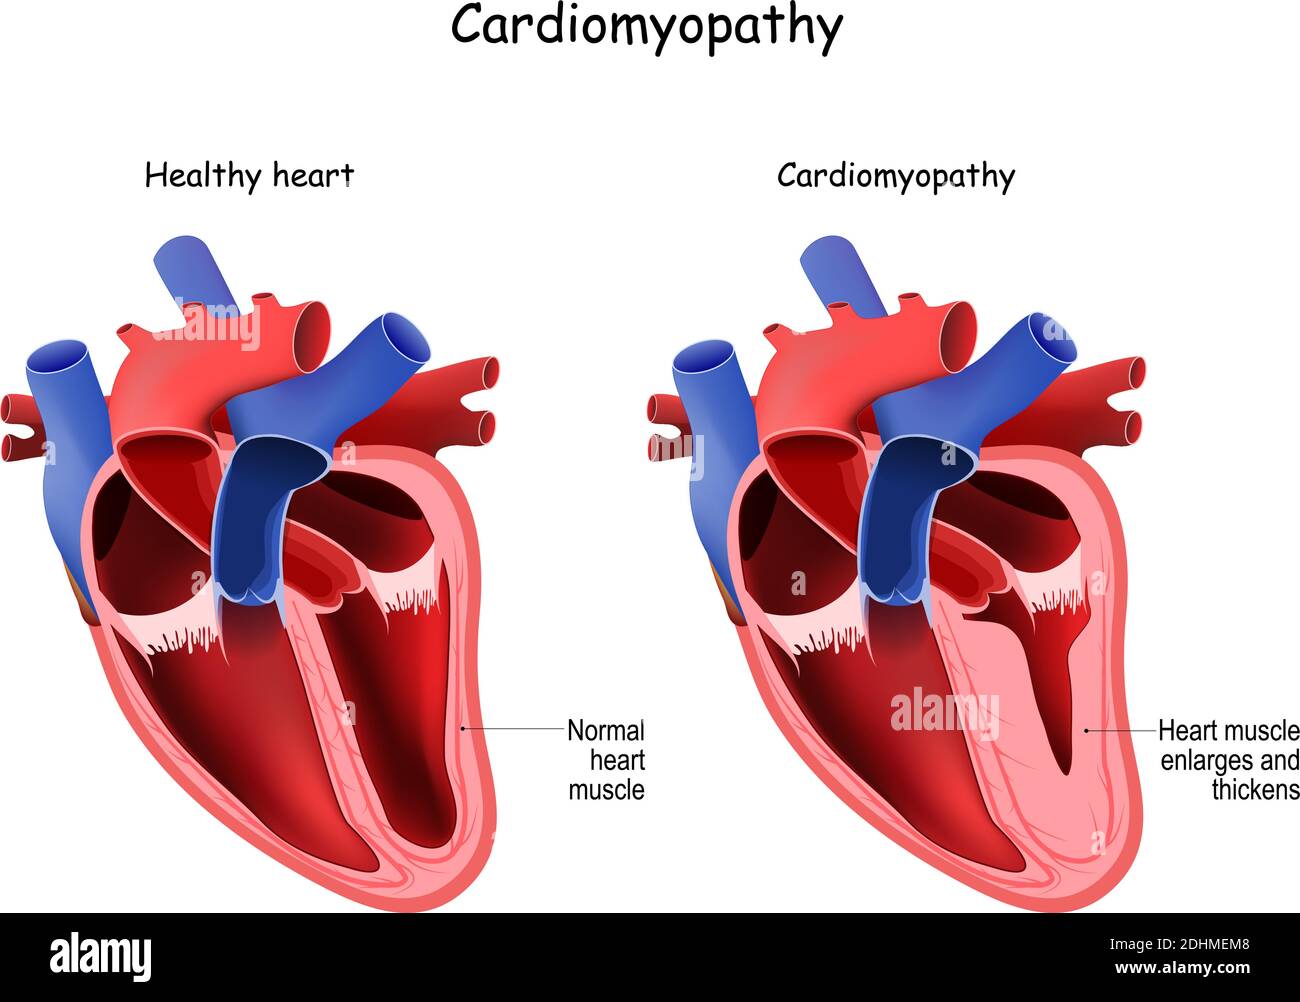 Kardiomyopathie. Gesundes Herz und Herz mit vergrößerten und verdickten Muskeln. Querschnitt des menschlichen Herzens Stock Vektor